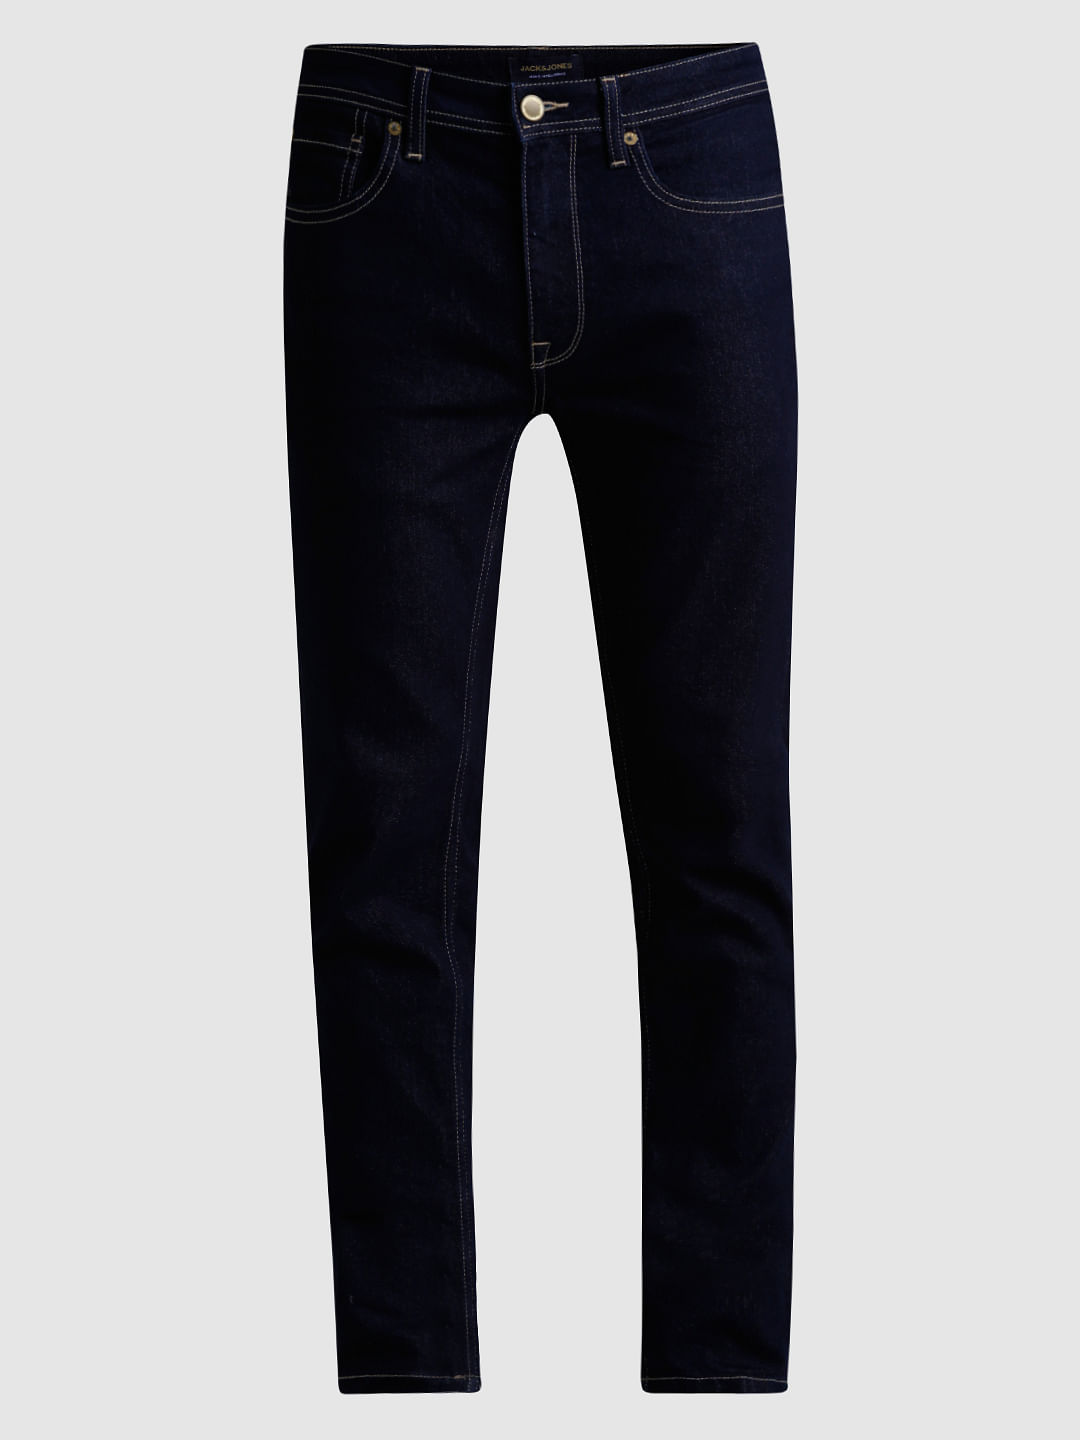 Superstretch Slim Fit Jeans - Dark denim blue - Kids | H&M IN